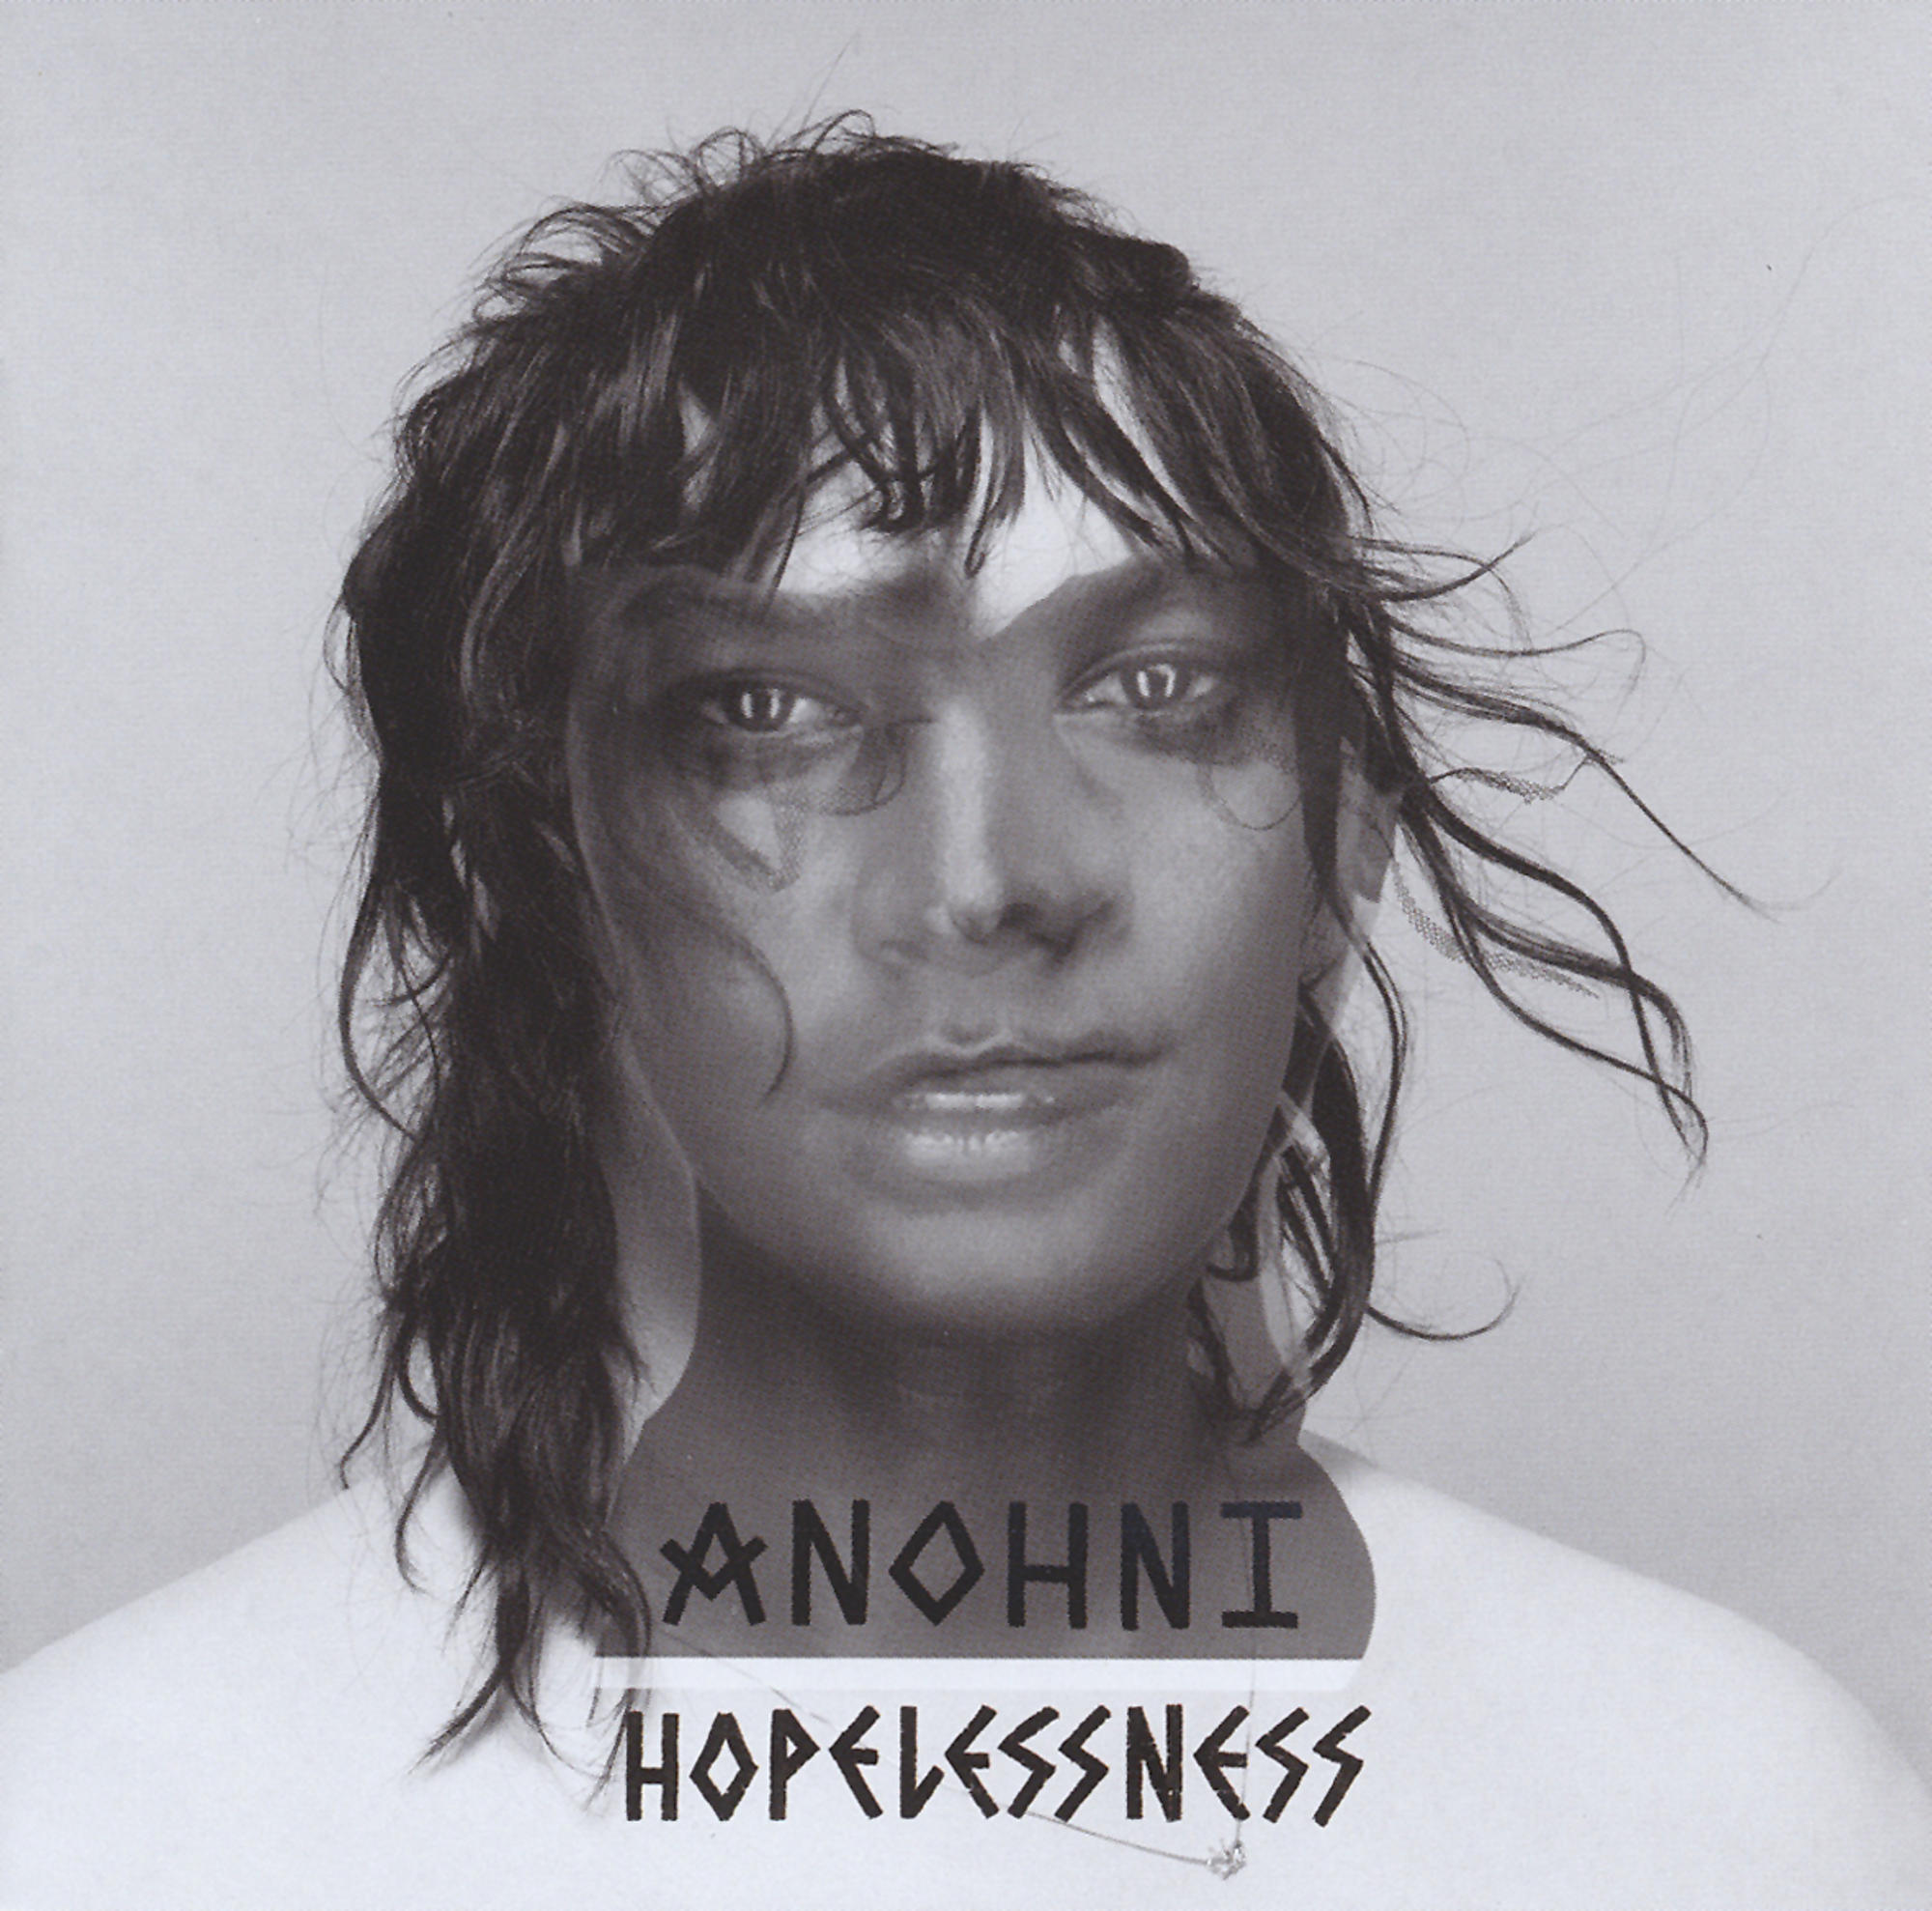 - Anohni (CD) - Hopelessness